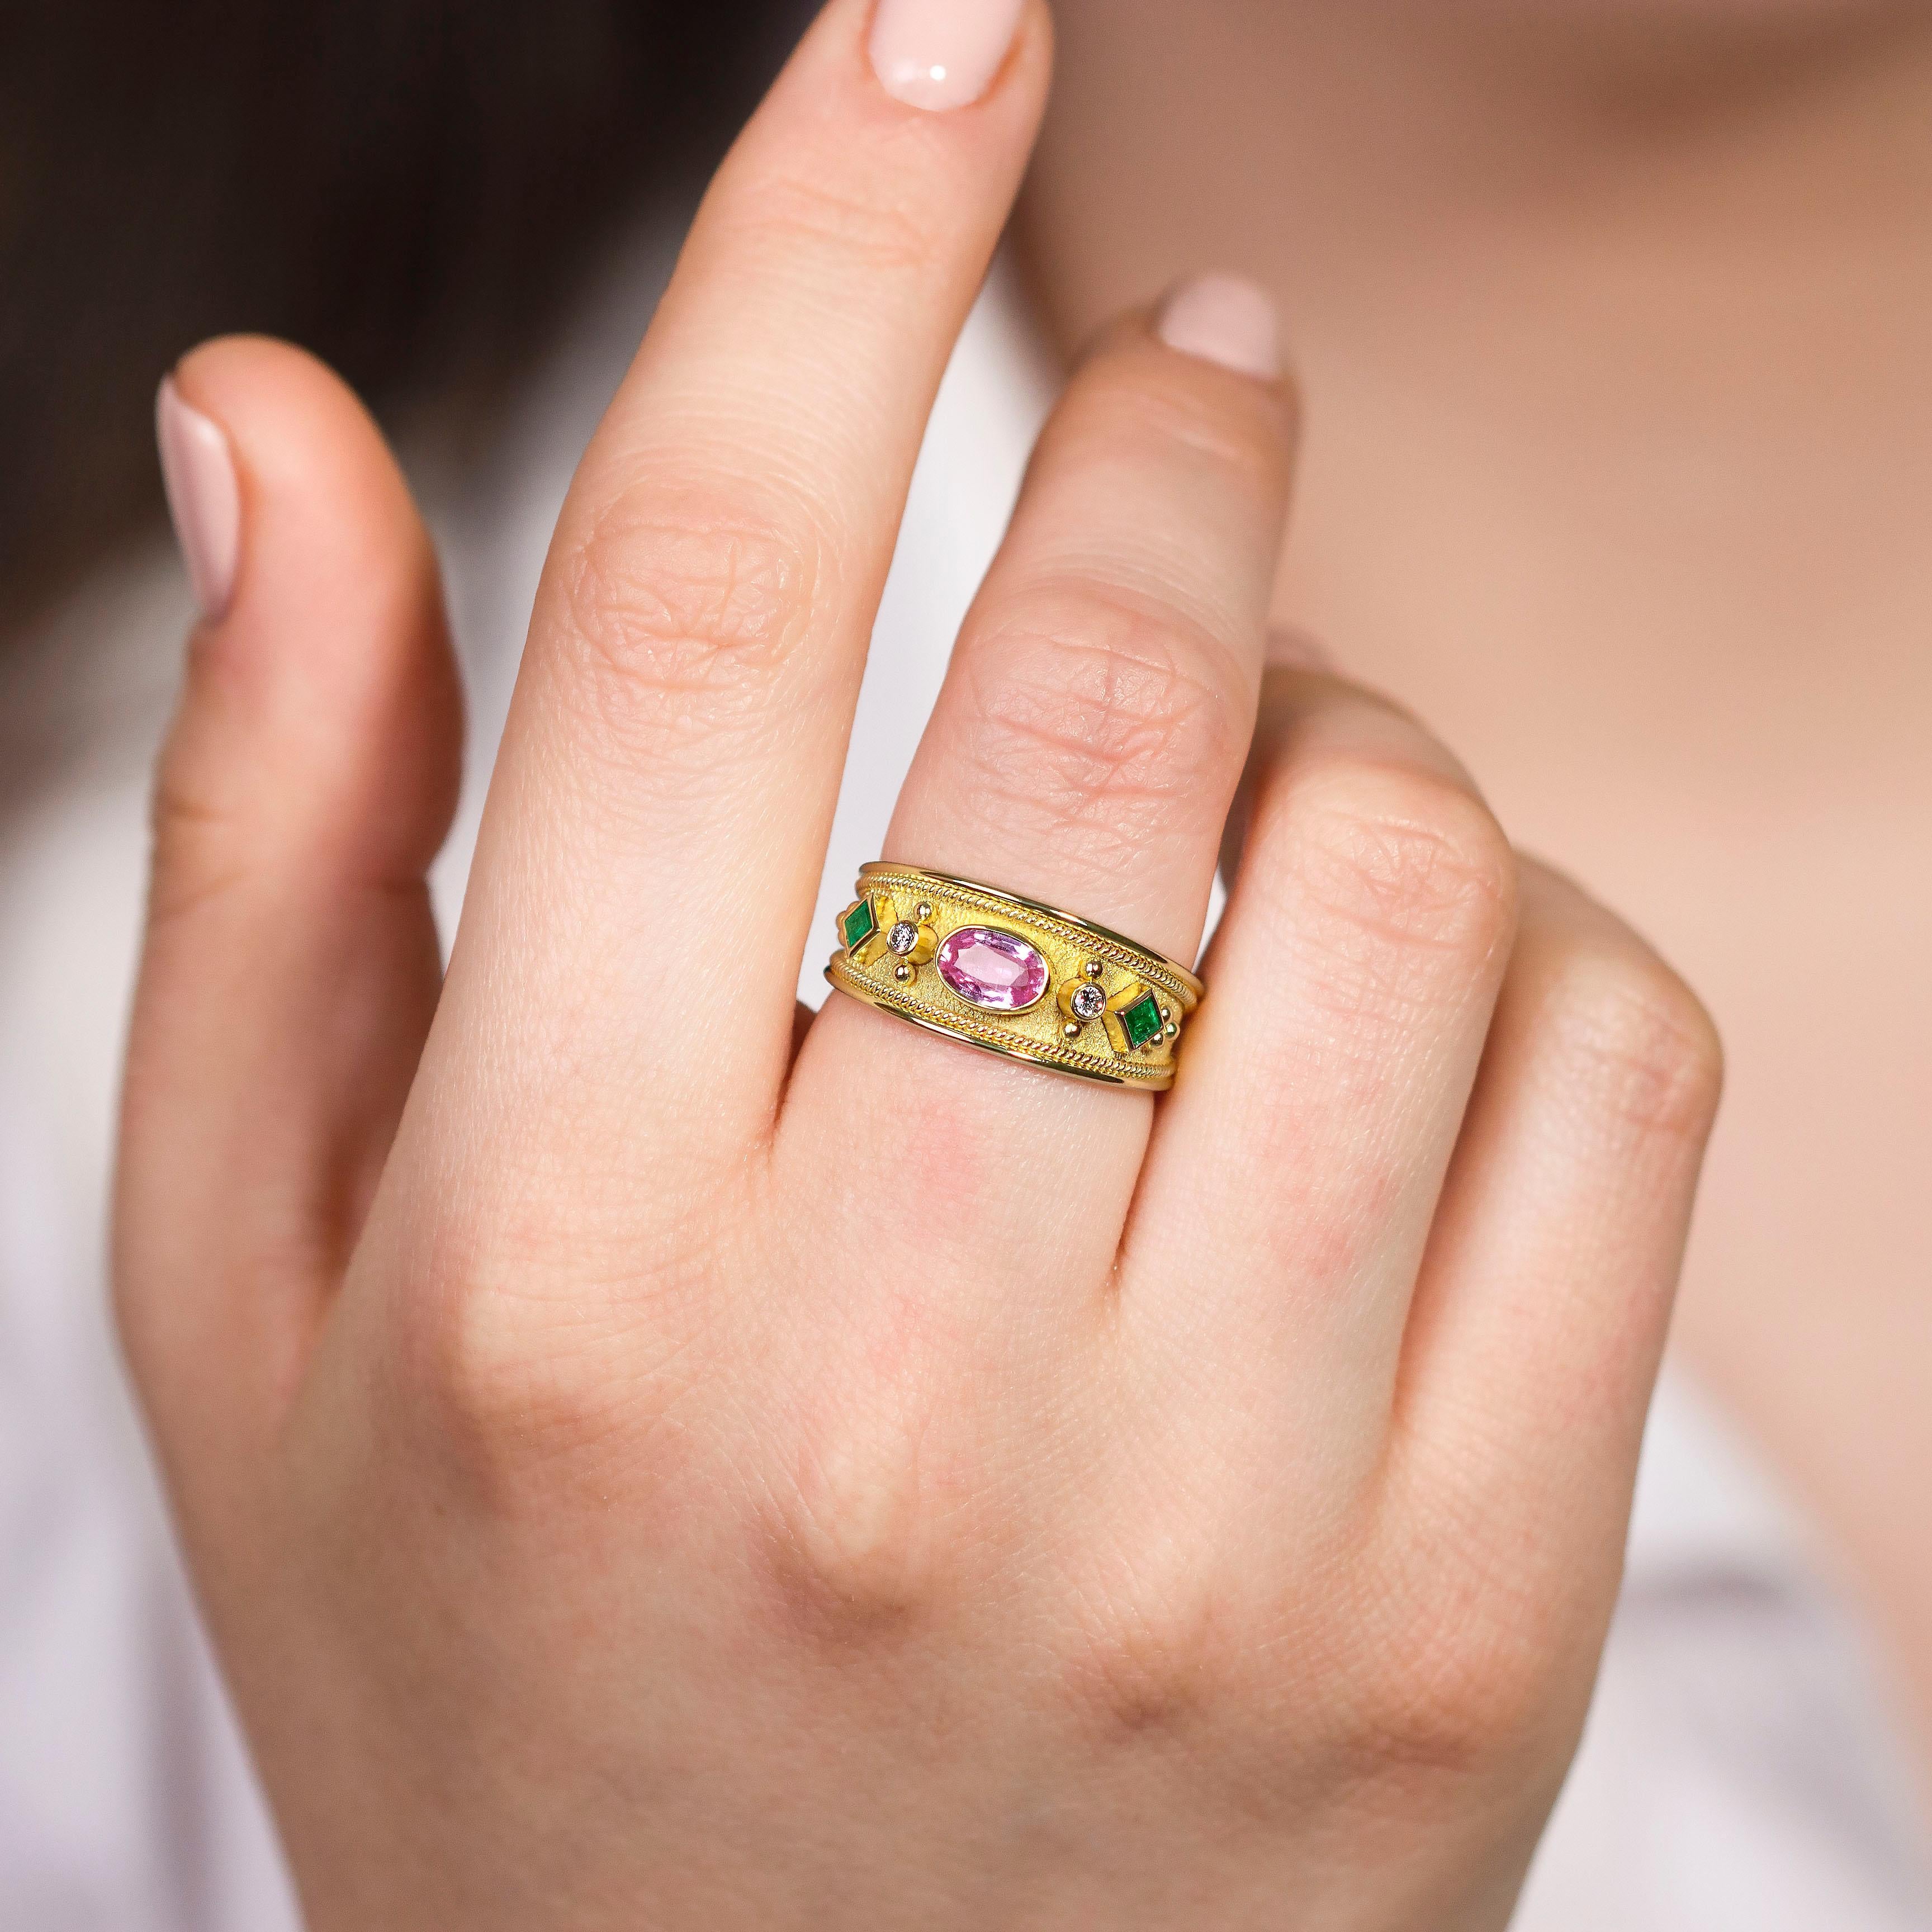 Ein goldener Ring mit zwei quadratischen Smaragden auf jeder Seite, die durch einen ovalen Saphir ergänzt werden - eine harmonische Symphonie aus Farbe und zeitlosem Charme, die Sie an Ihrer Hand tragen können.

100% handgefertigt in unserer